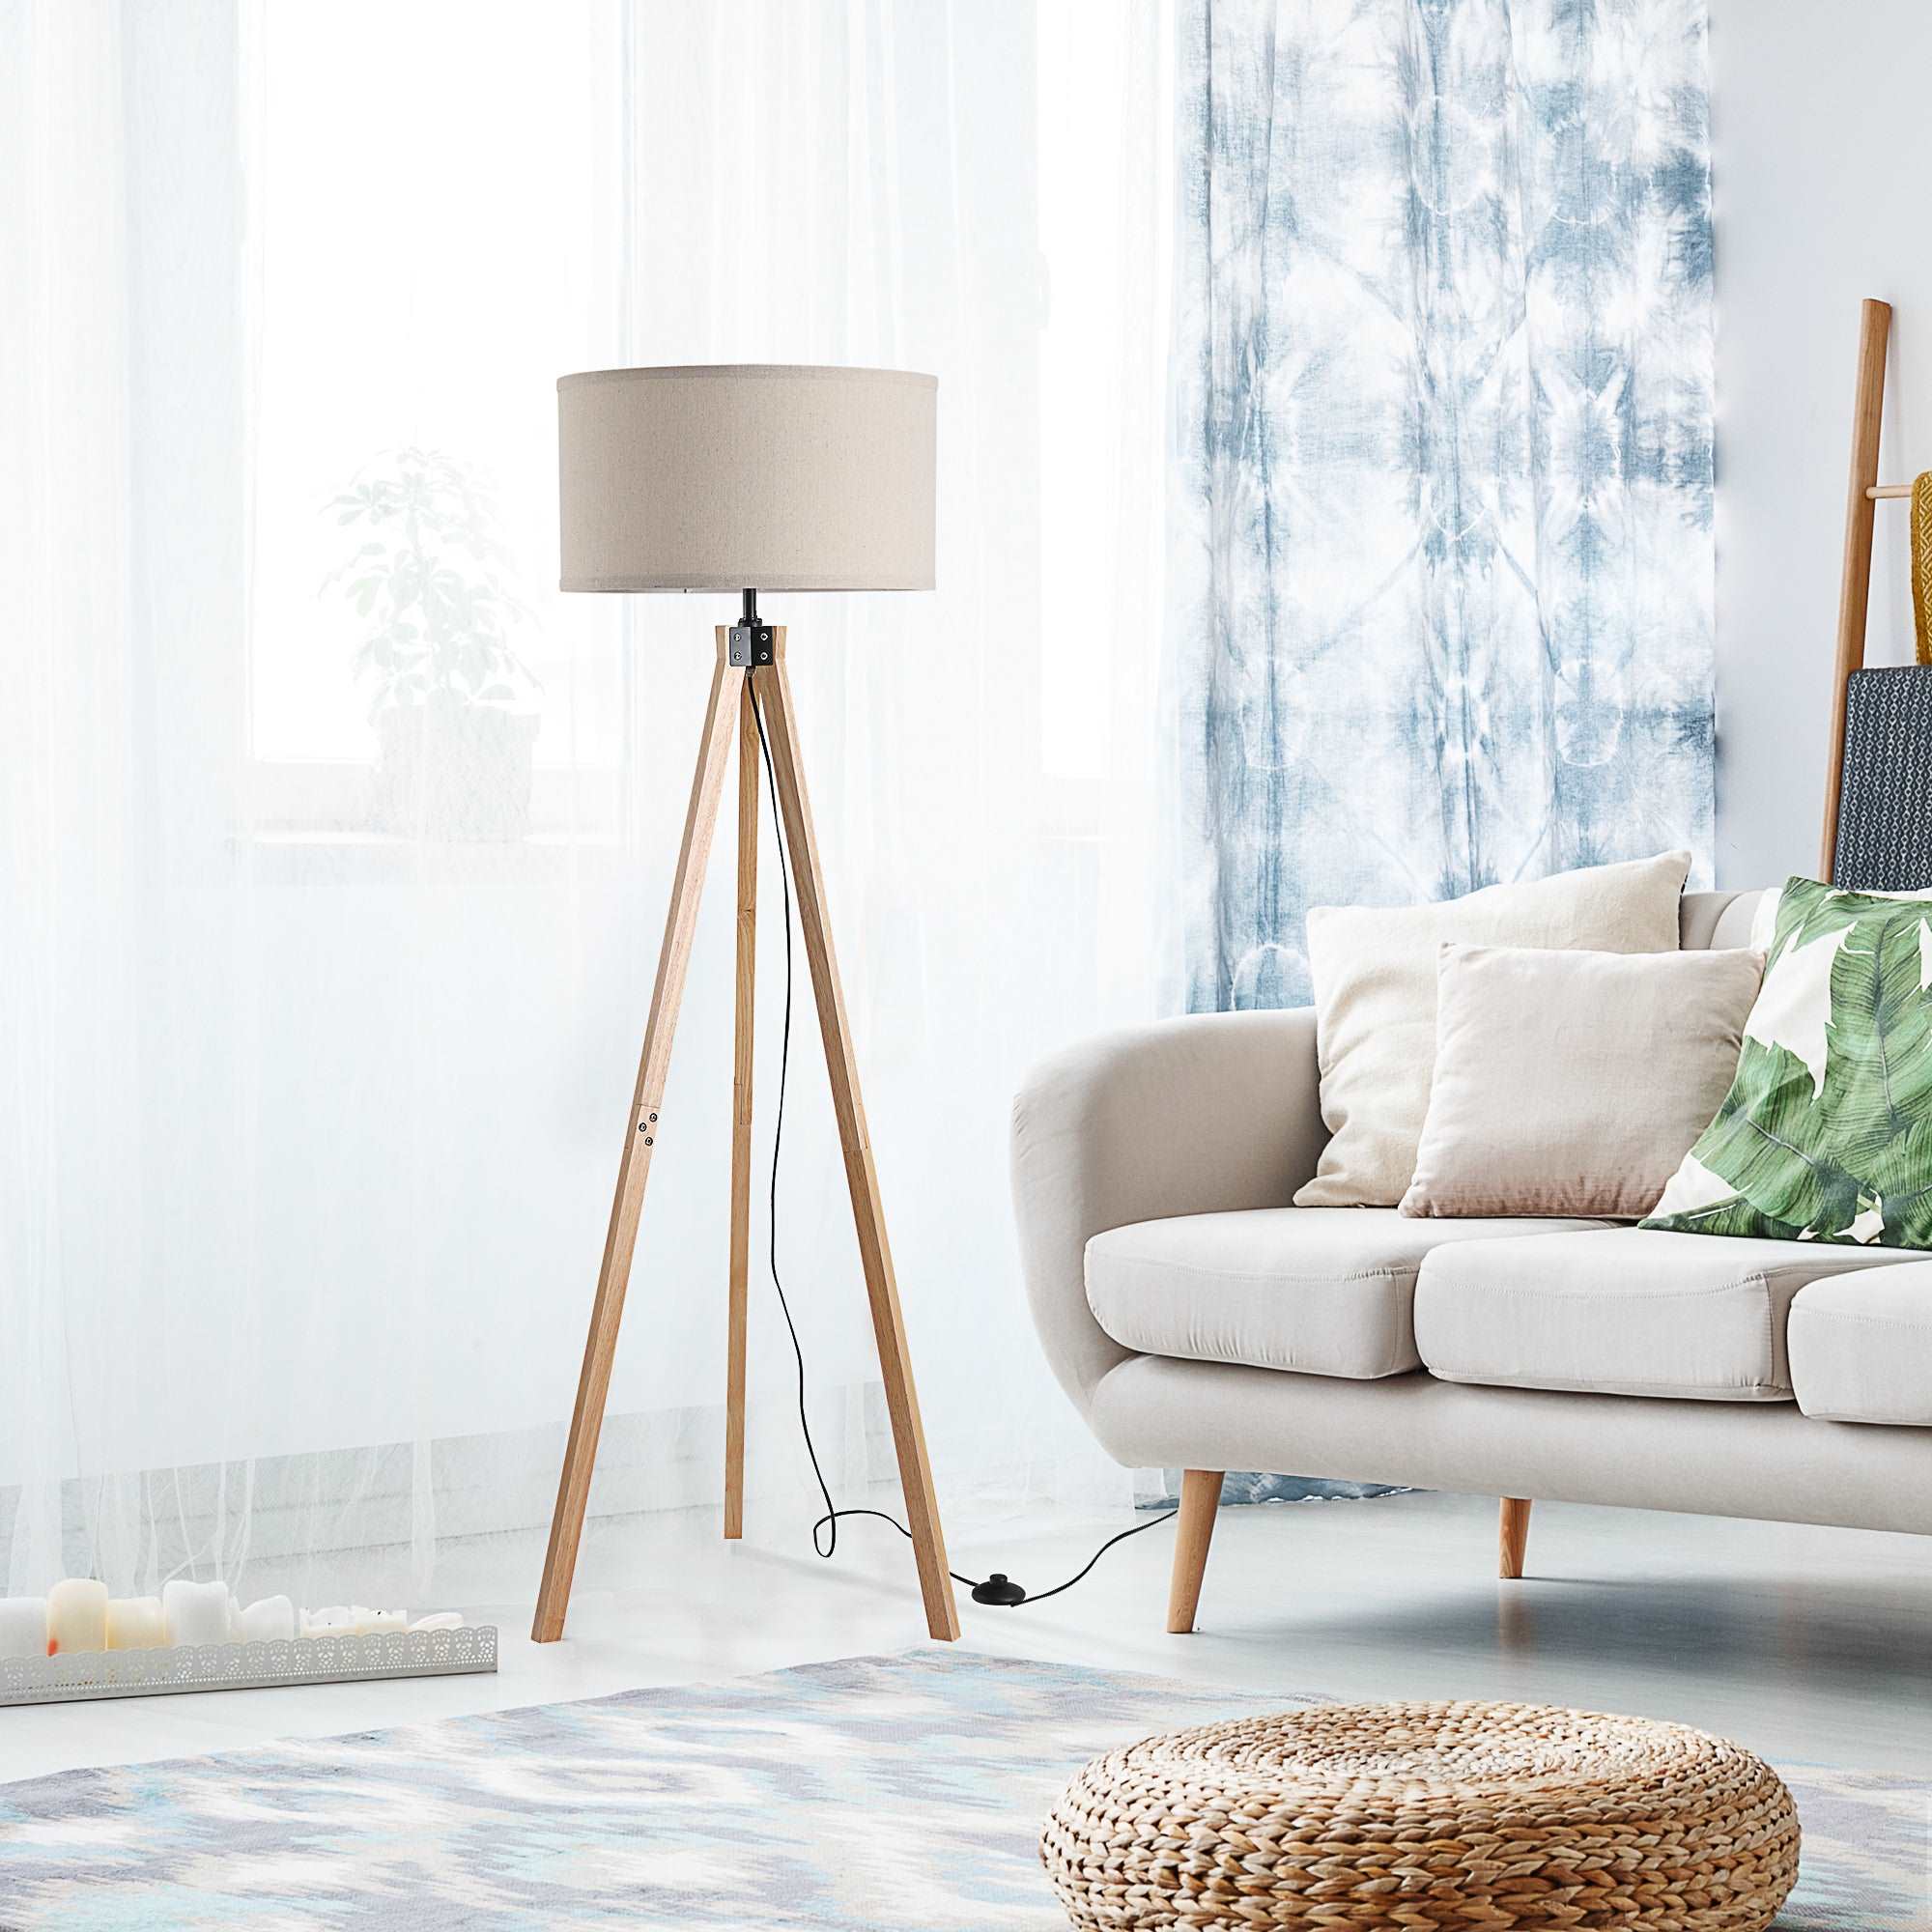 5FT Elegant Wood Tripod Floor Lamp Free Standing E27 Bulb Lamp Versatile Use For Home Office - Beige  AOSOM   